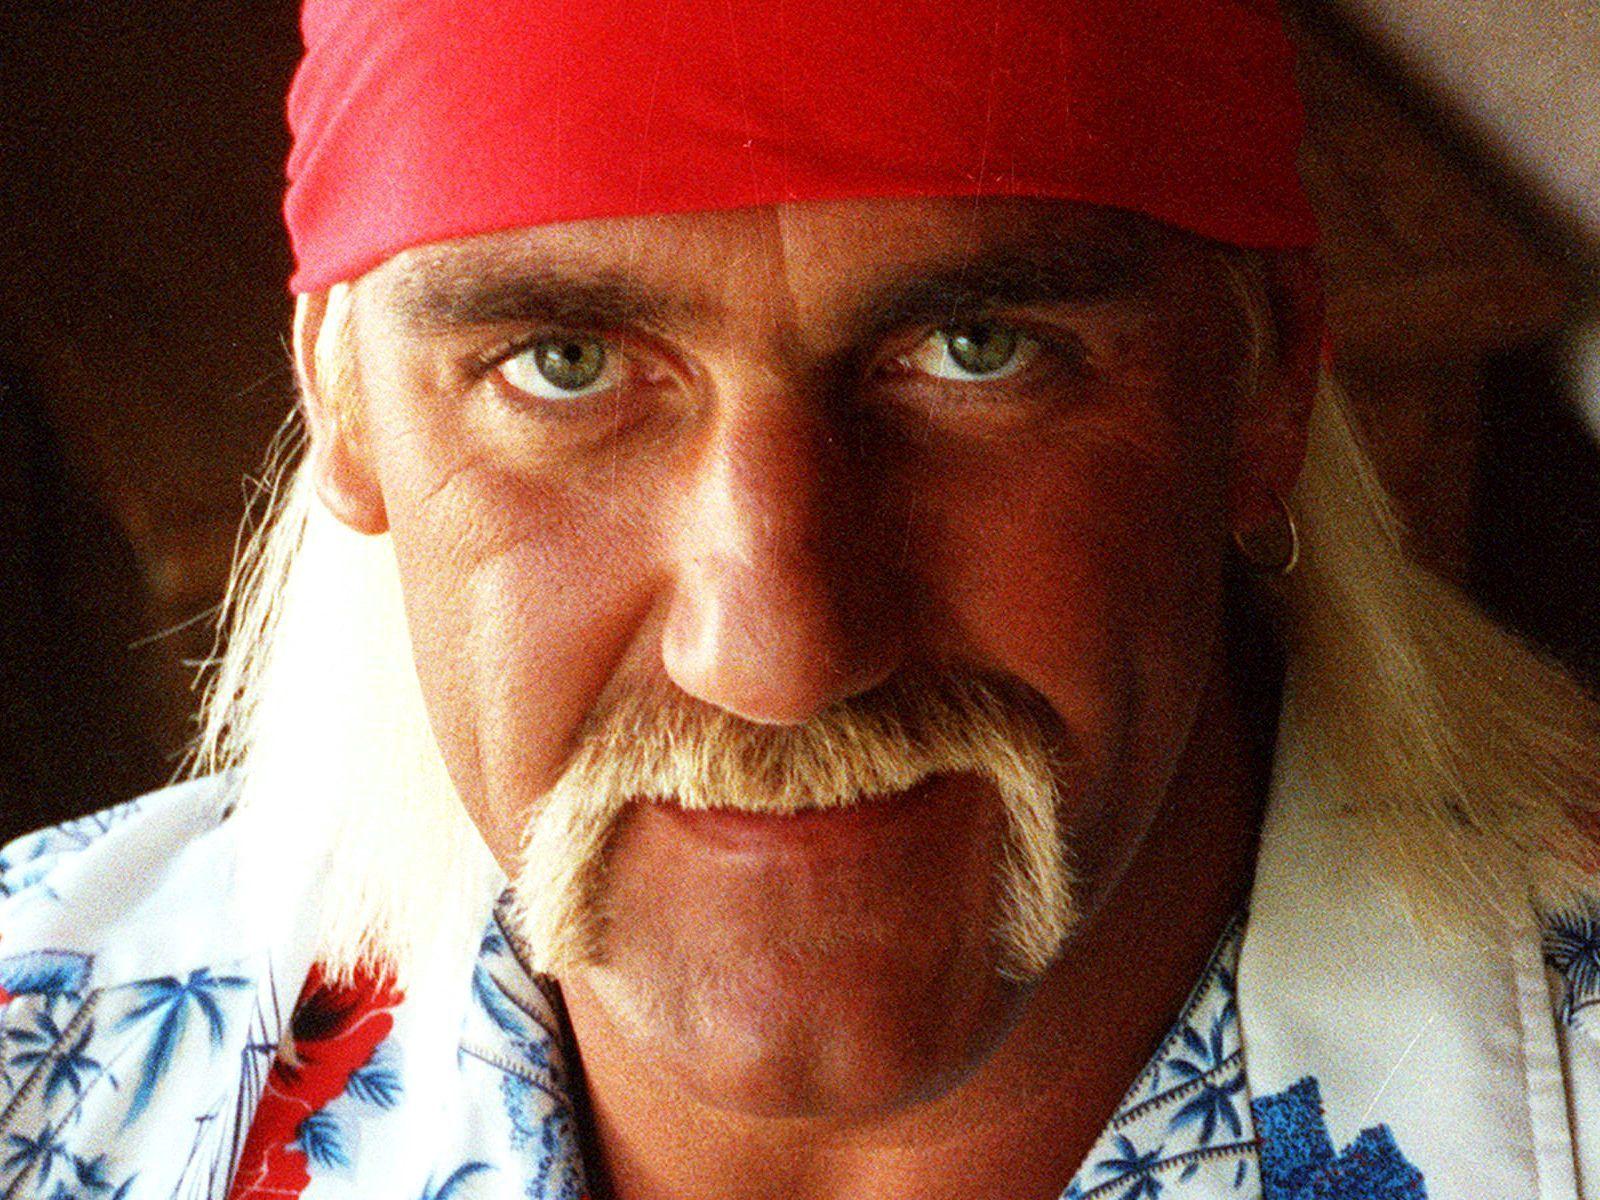 Hulk Hogan Image